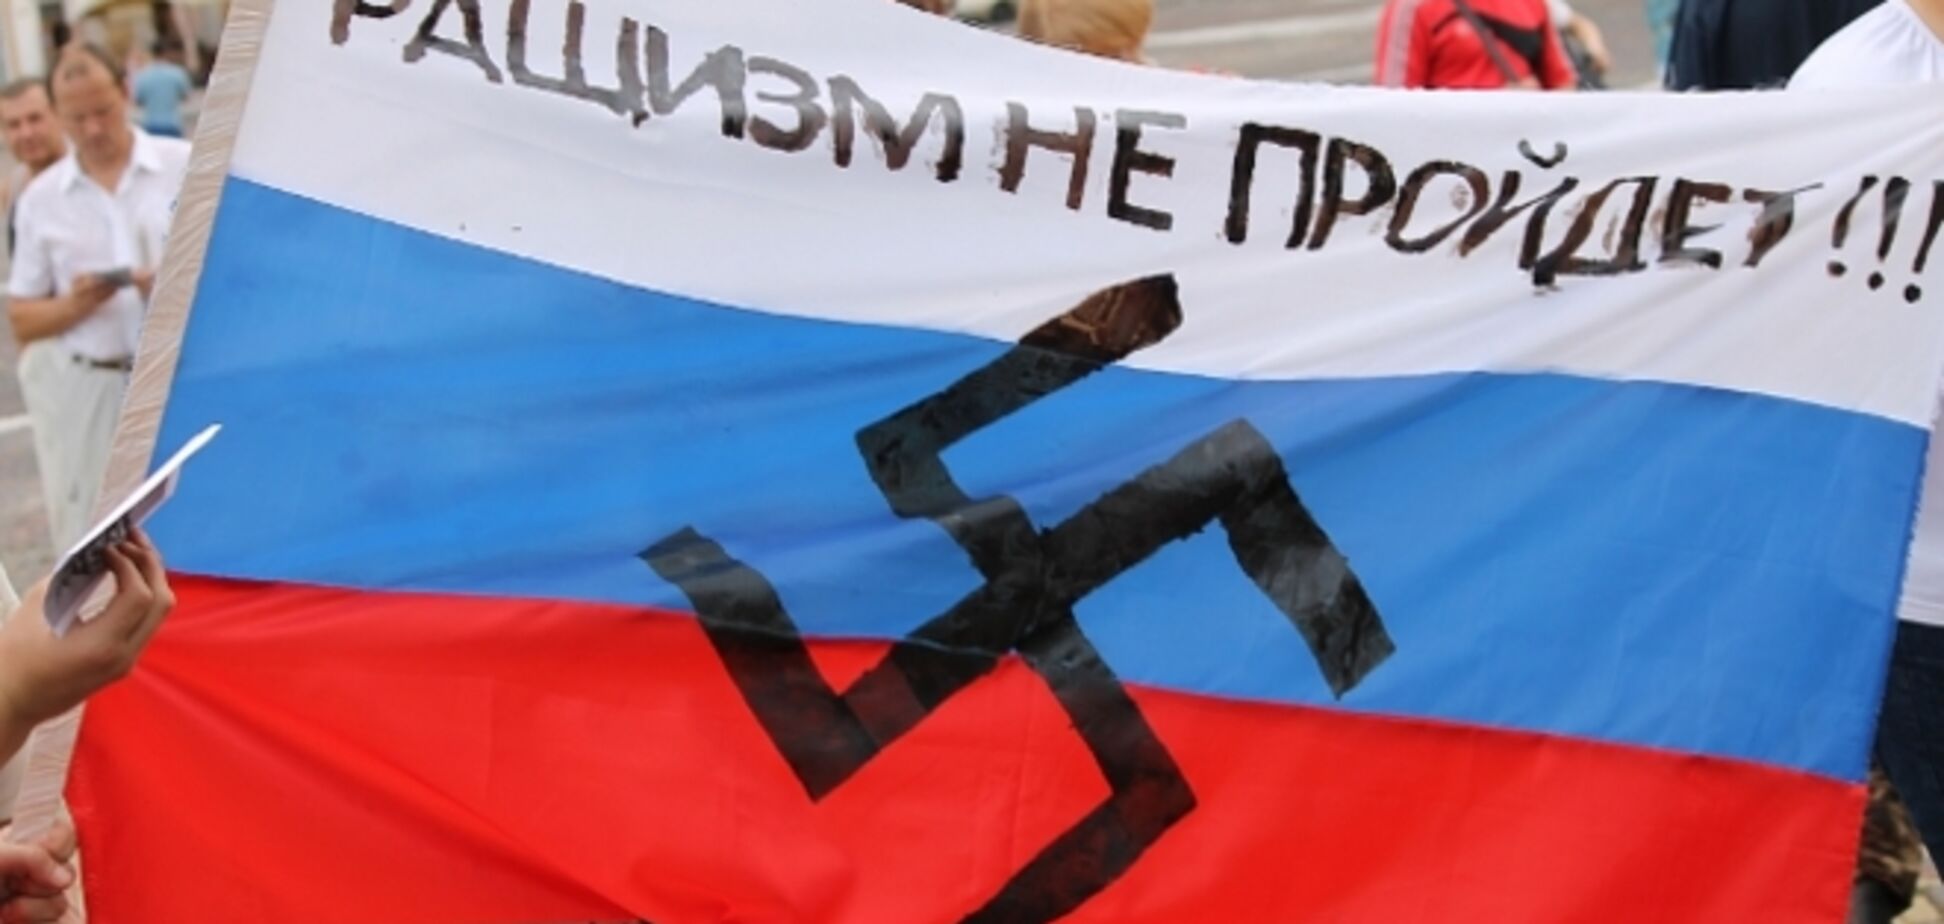 Харьковские рашисты провалили проплаченный рублями митинг: расценки и список привлеченных СМИ